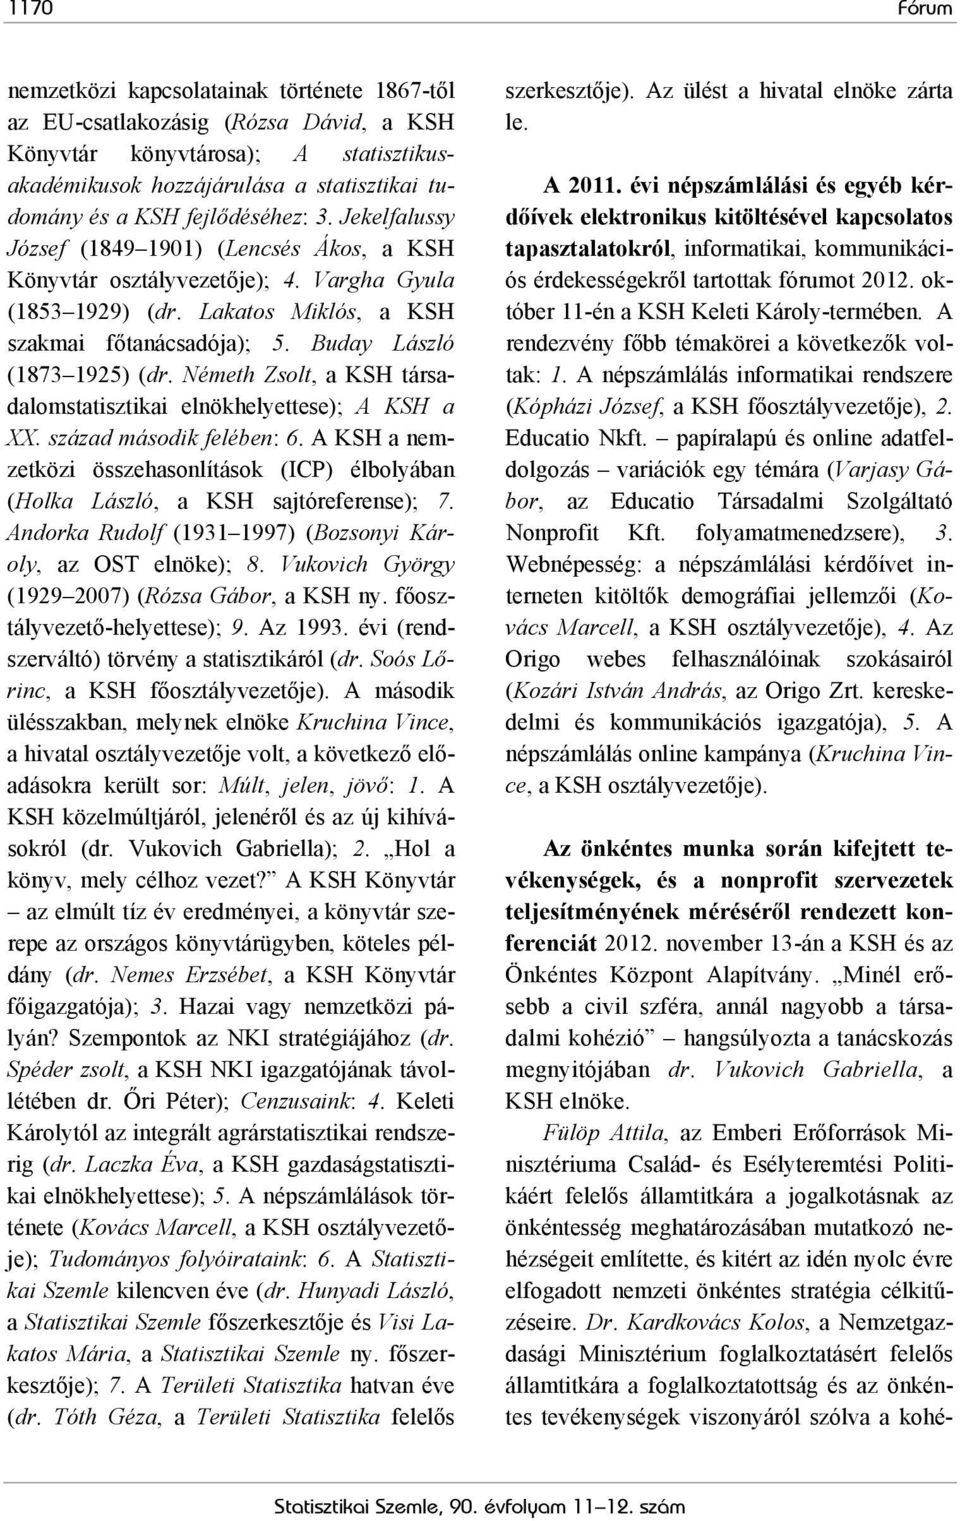 Buday László (1873 1925) (dr. Németh Zsolt, a KSH társadalomstatisztikai elnökhelyettese); A KSH a XX. század második felében: 6.